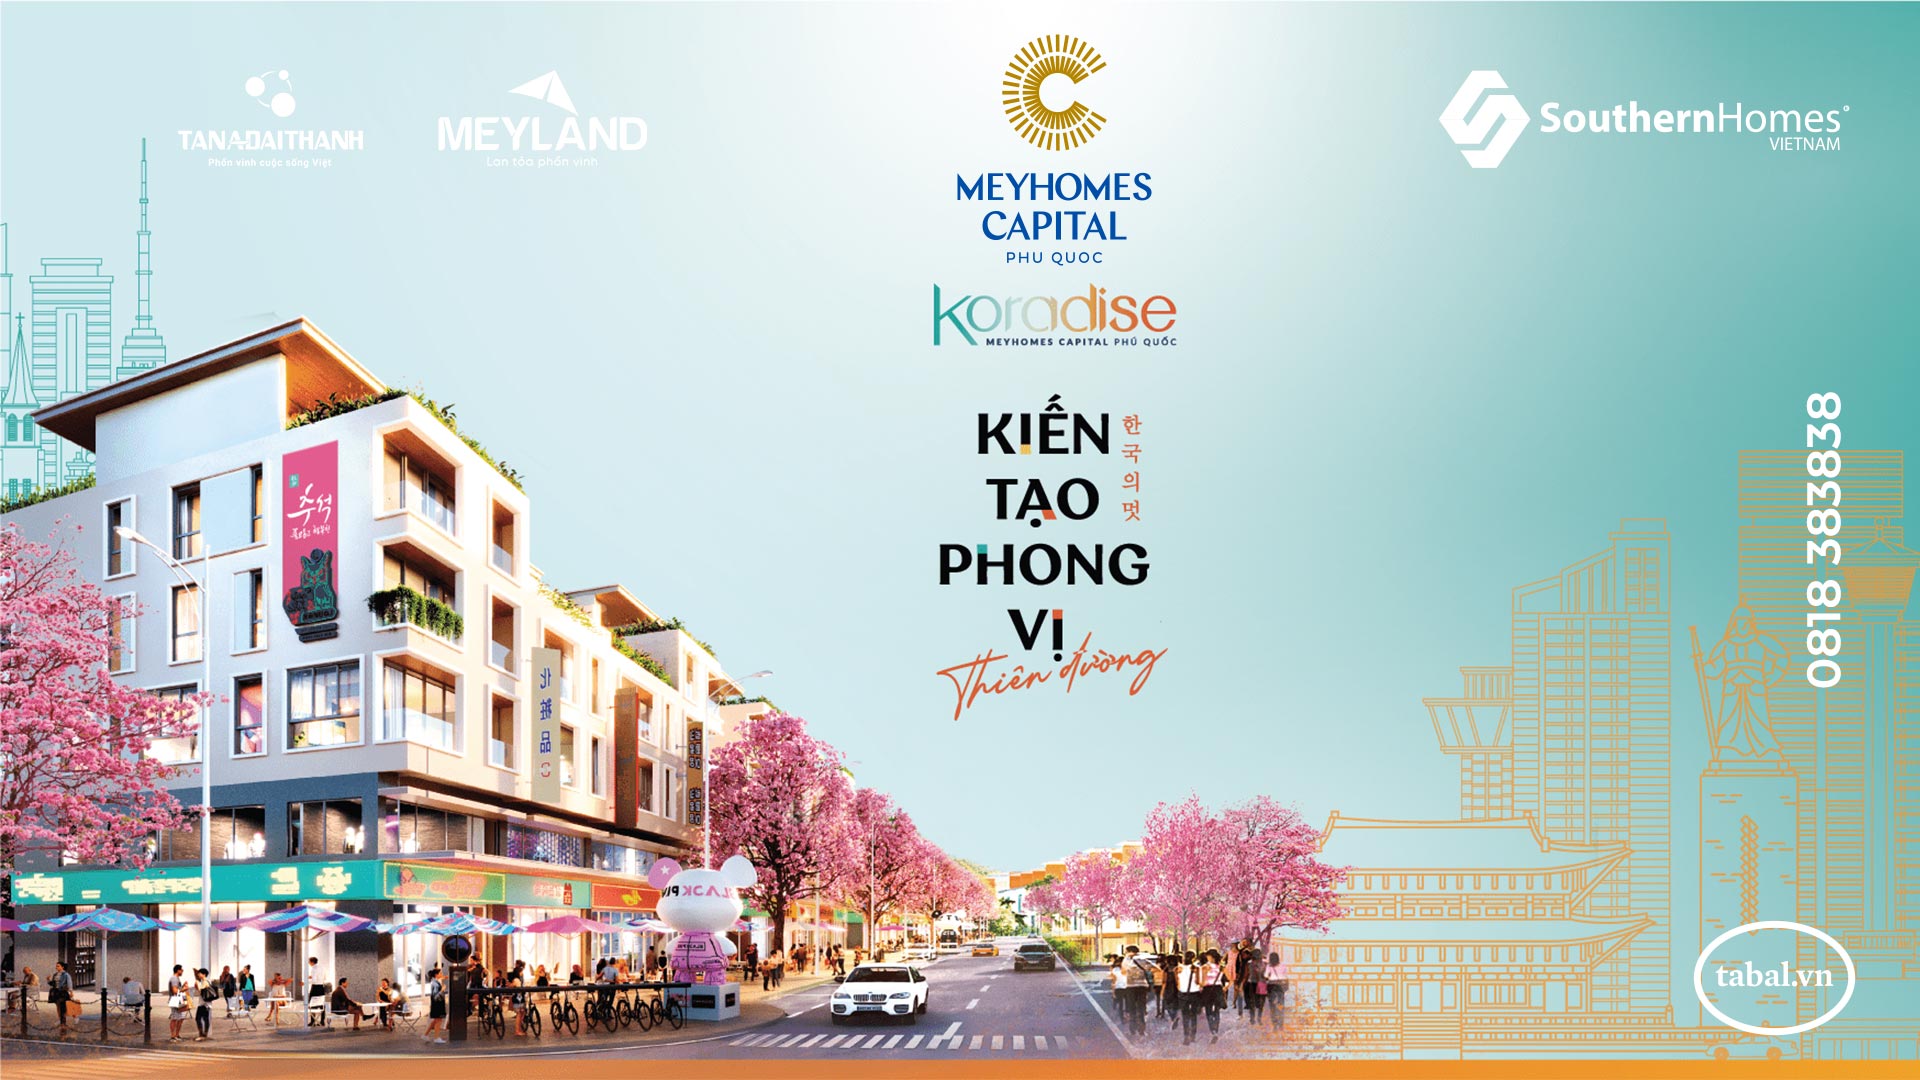 Dự án Koradise Meyhomes Capital Phú Quốc - Chủ đầu tư MeyLan Tân Á Đại Thành - Đại lý phân phối SouthernHomes Việt Nam